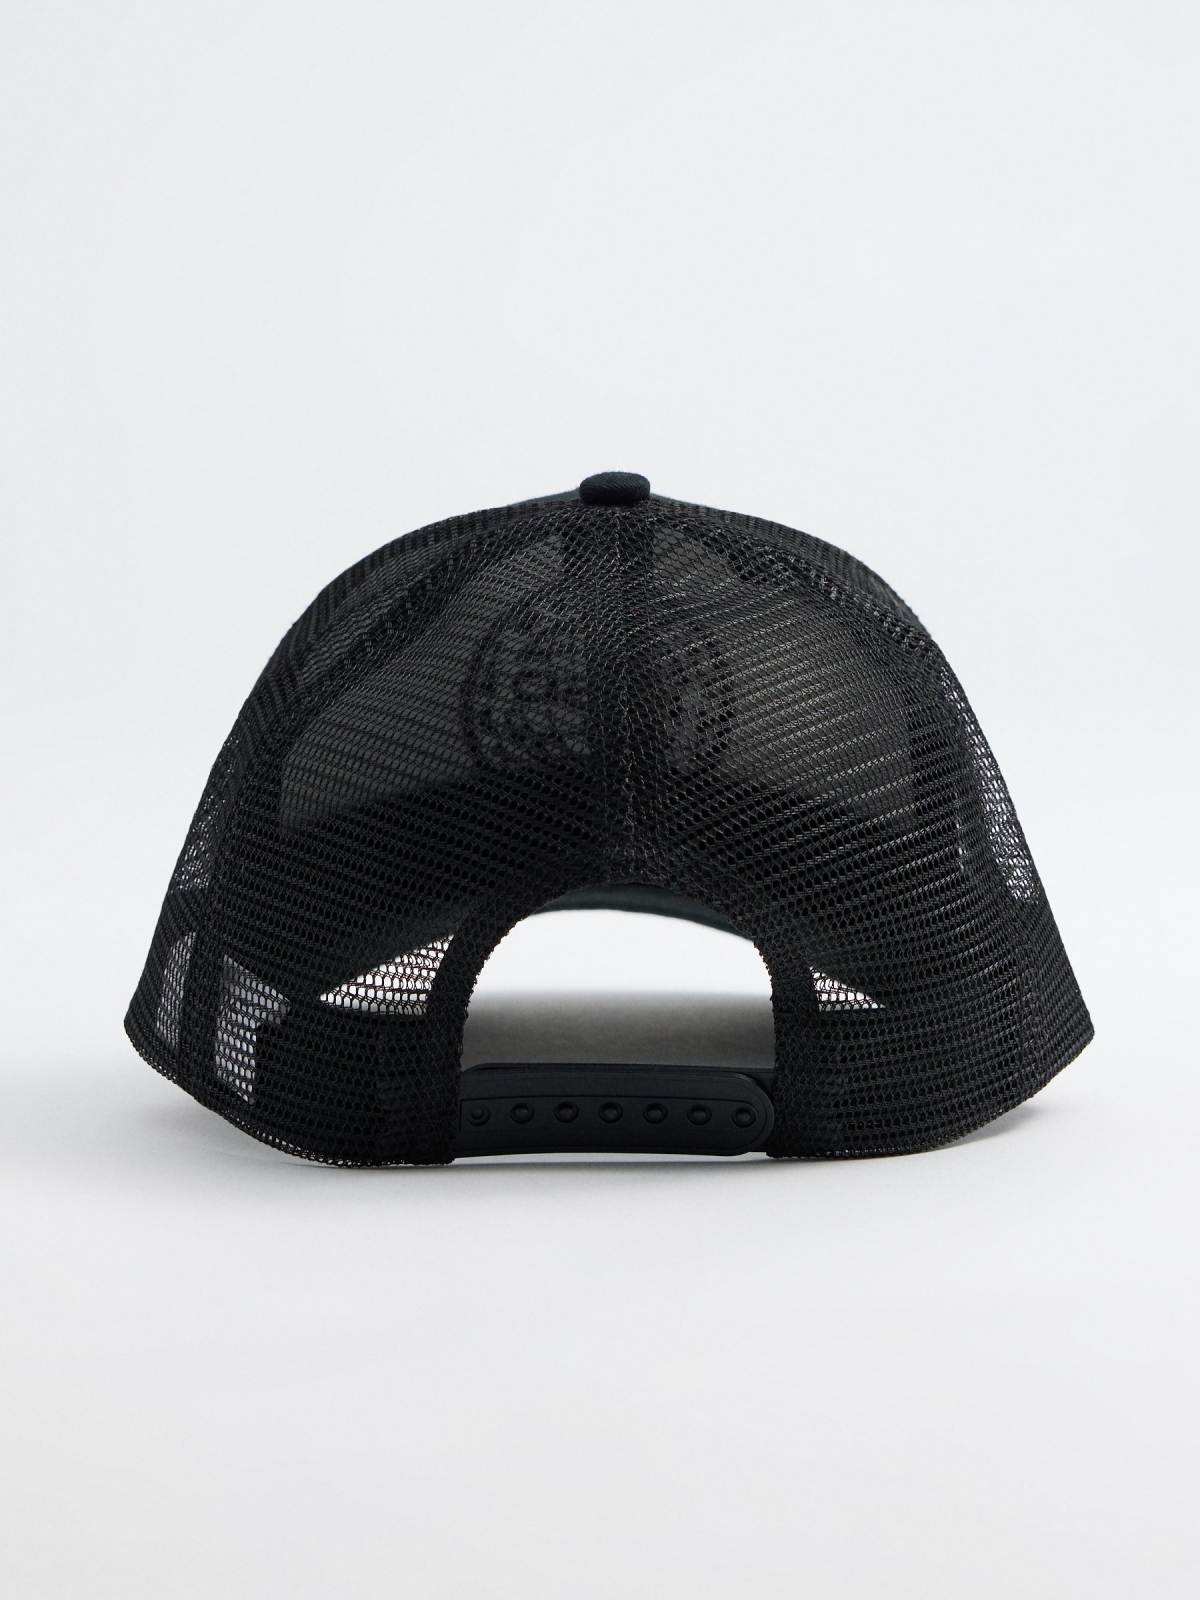 Gorra parche bordado negro vista detalle